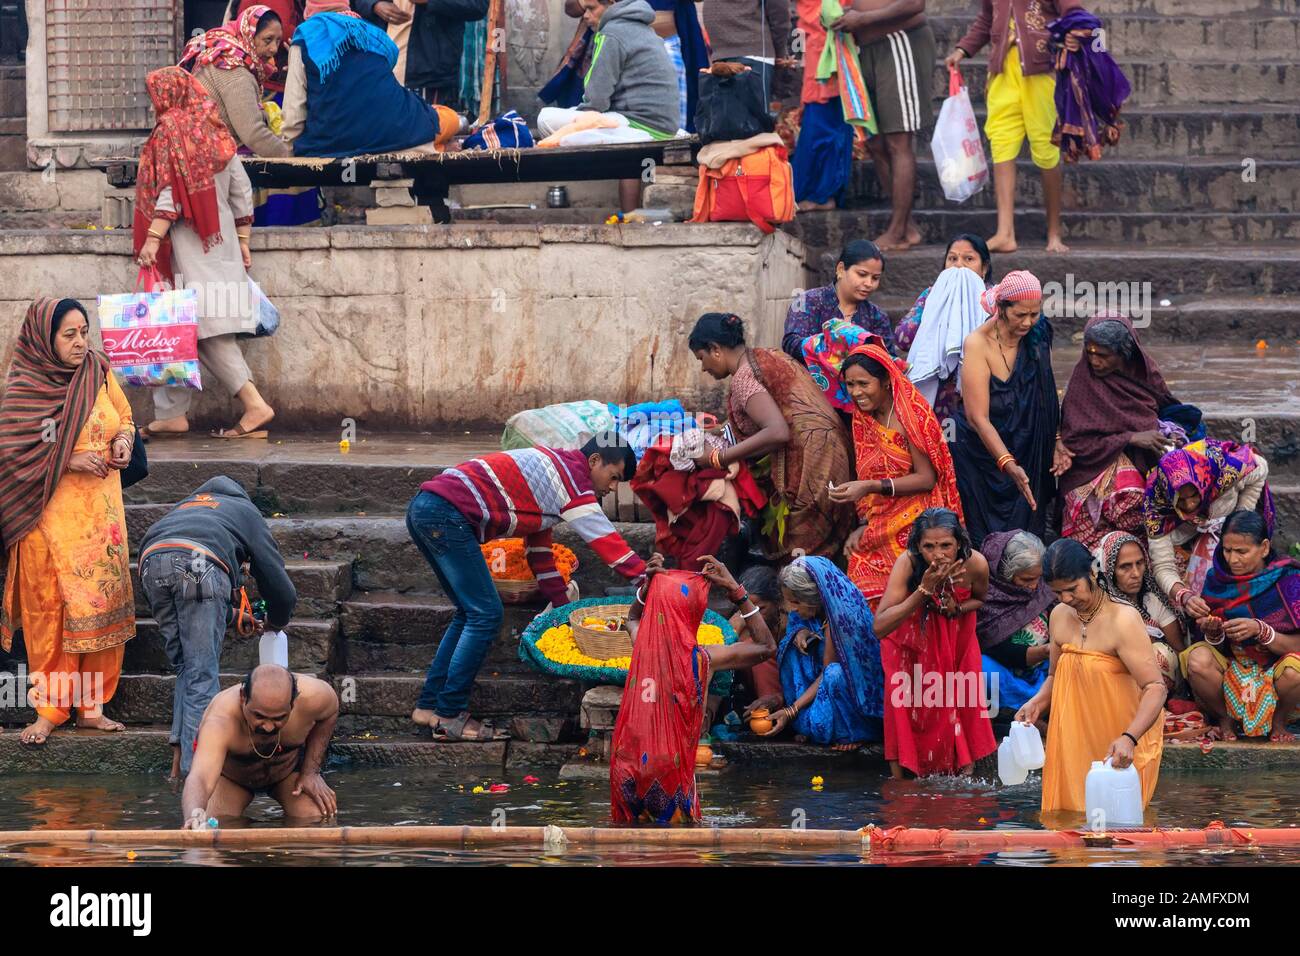 VARANASI, INDIA, JANUARY 18, 2019 : Traditional Ganges river bathing and Hindu ritual at sunrise along the Varanasi Ghats Stock Photo